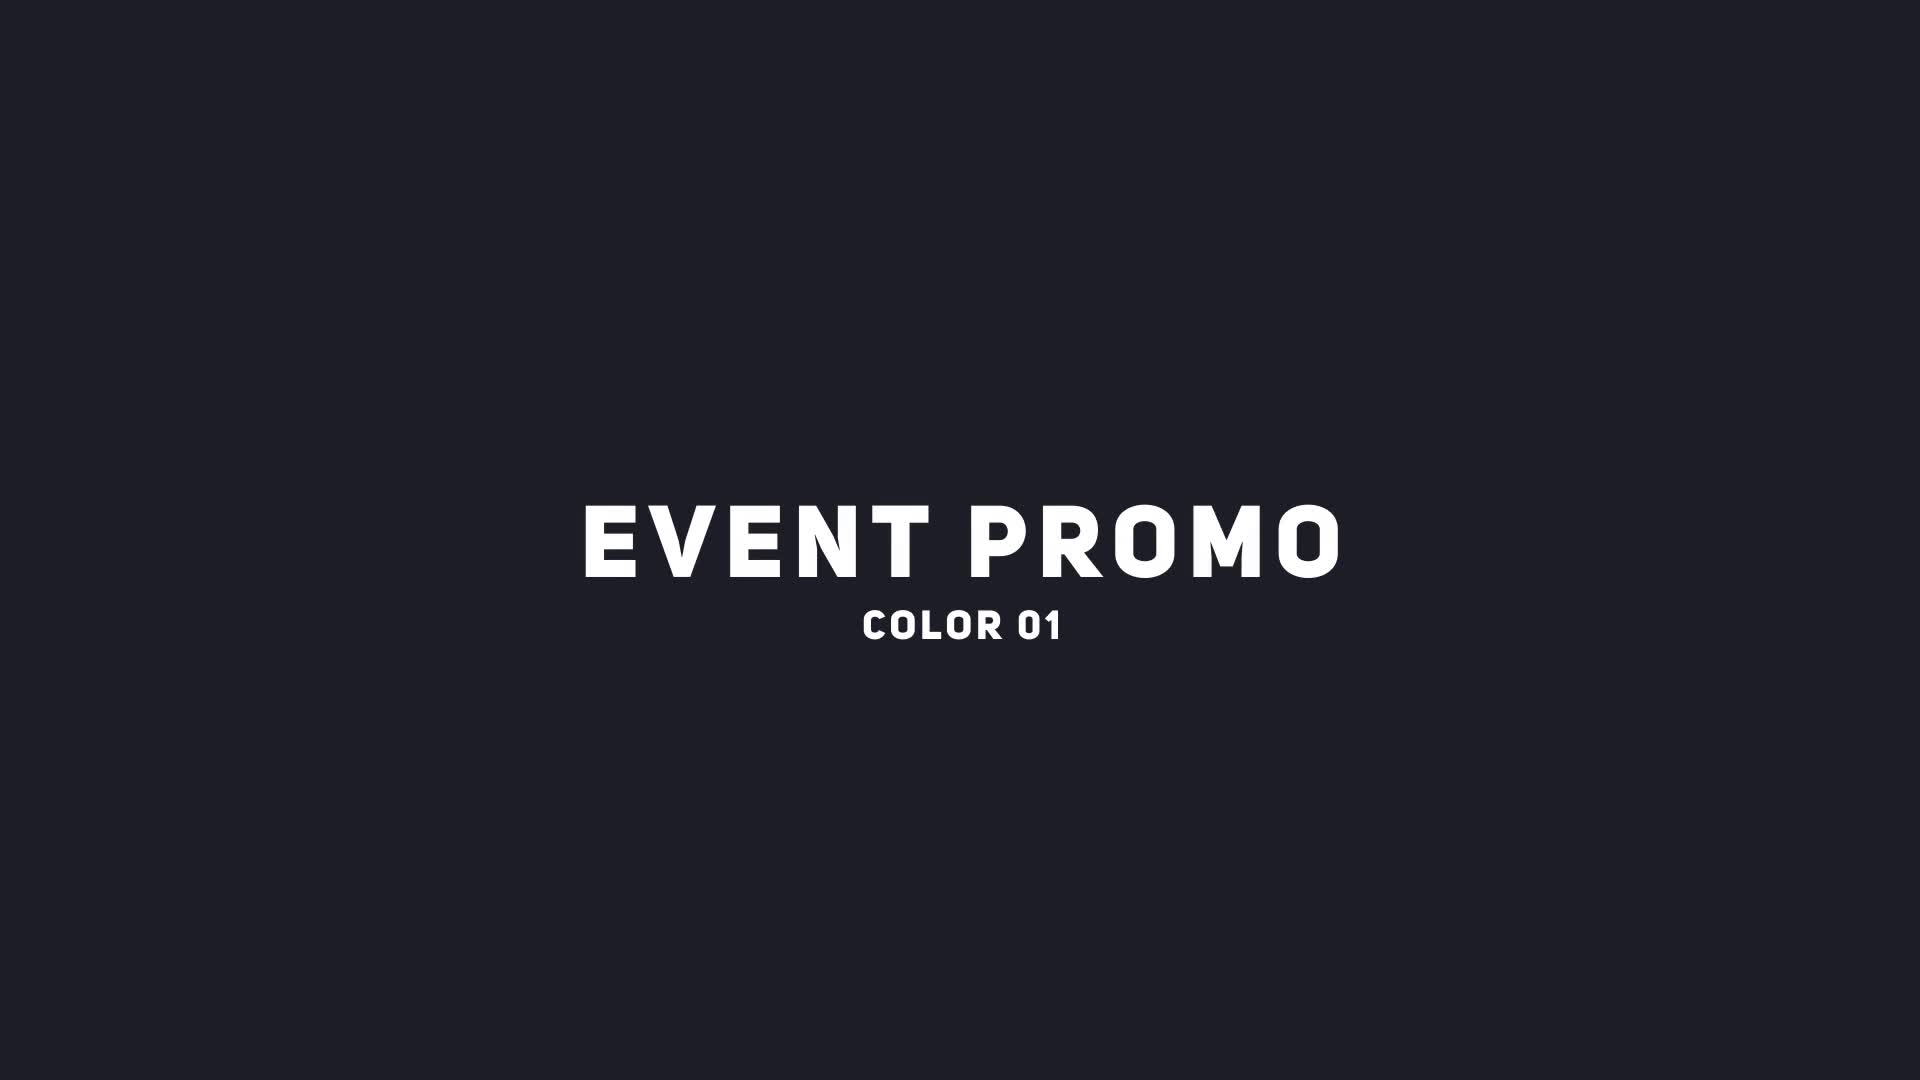 Event Promo Videohive 39415612 Premiere Pro Image 1